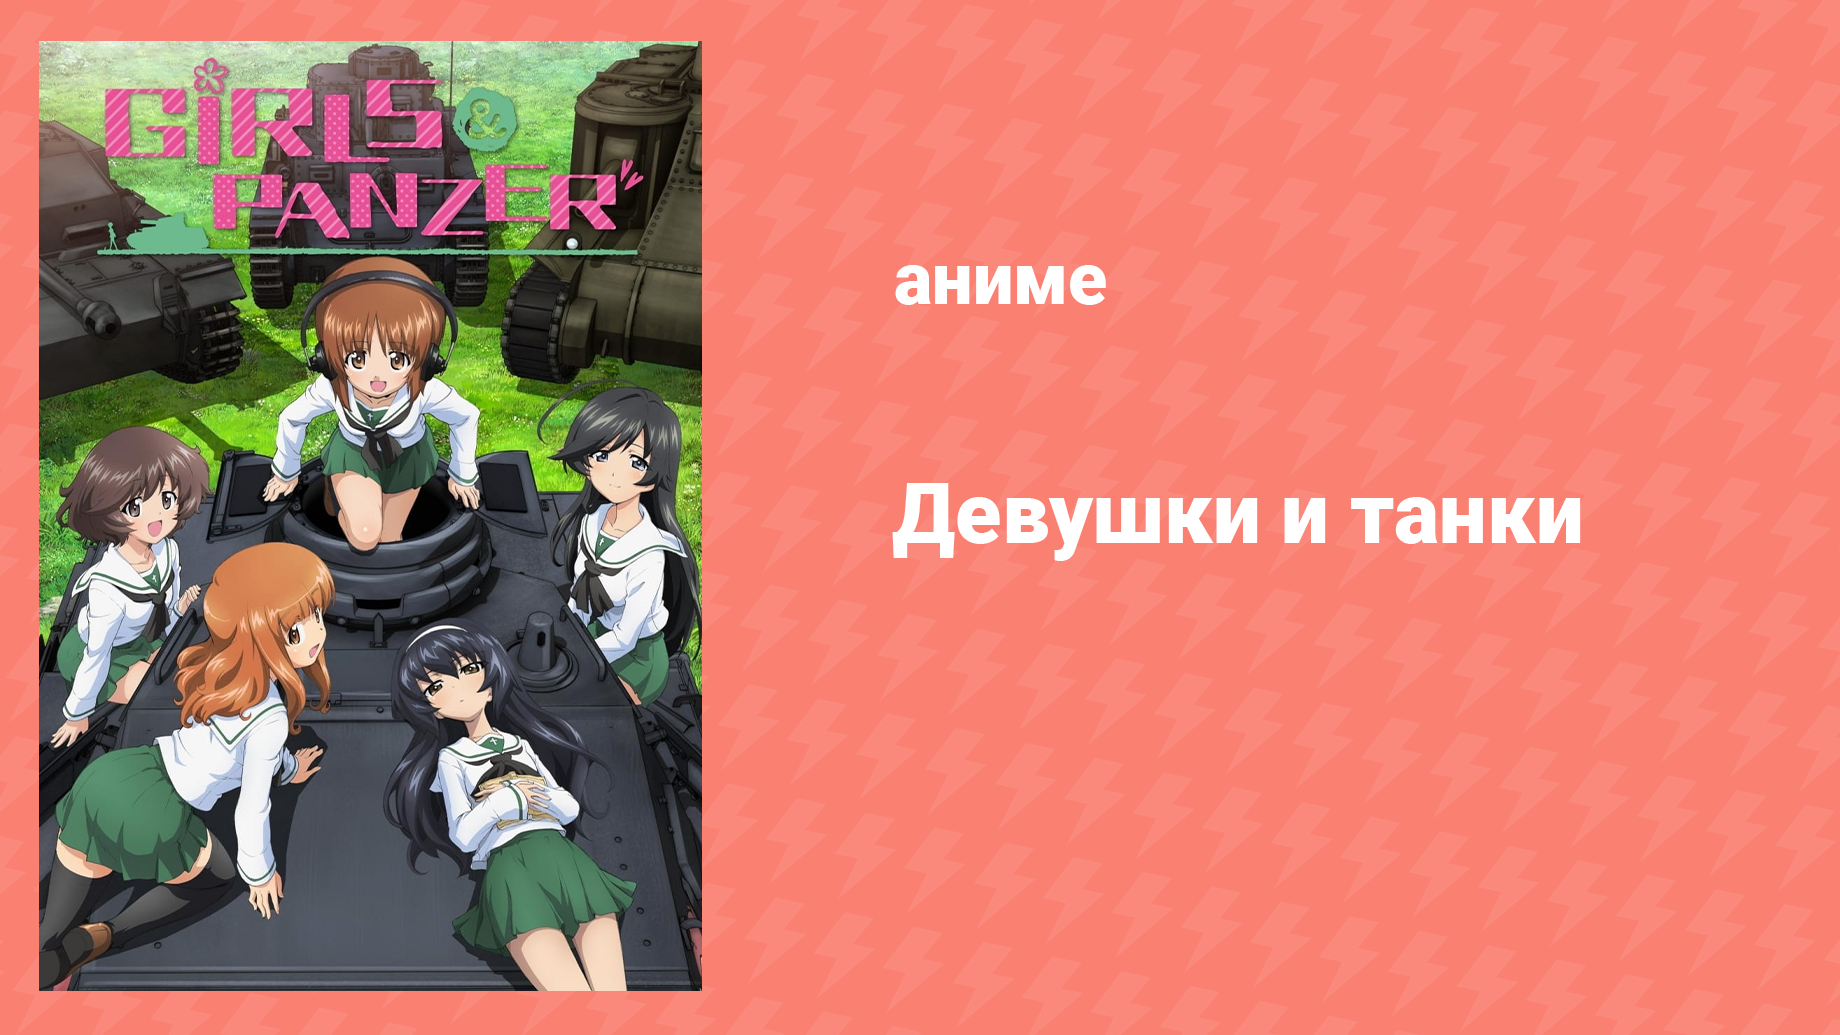 Девушки и танки 1 серия «Я займусь танководством!» (аниме-сериал, 2012)